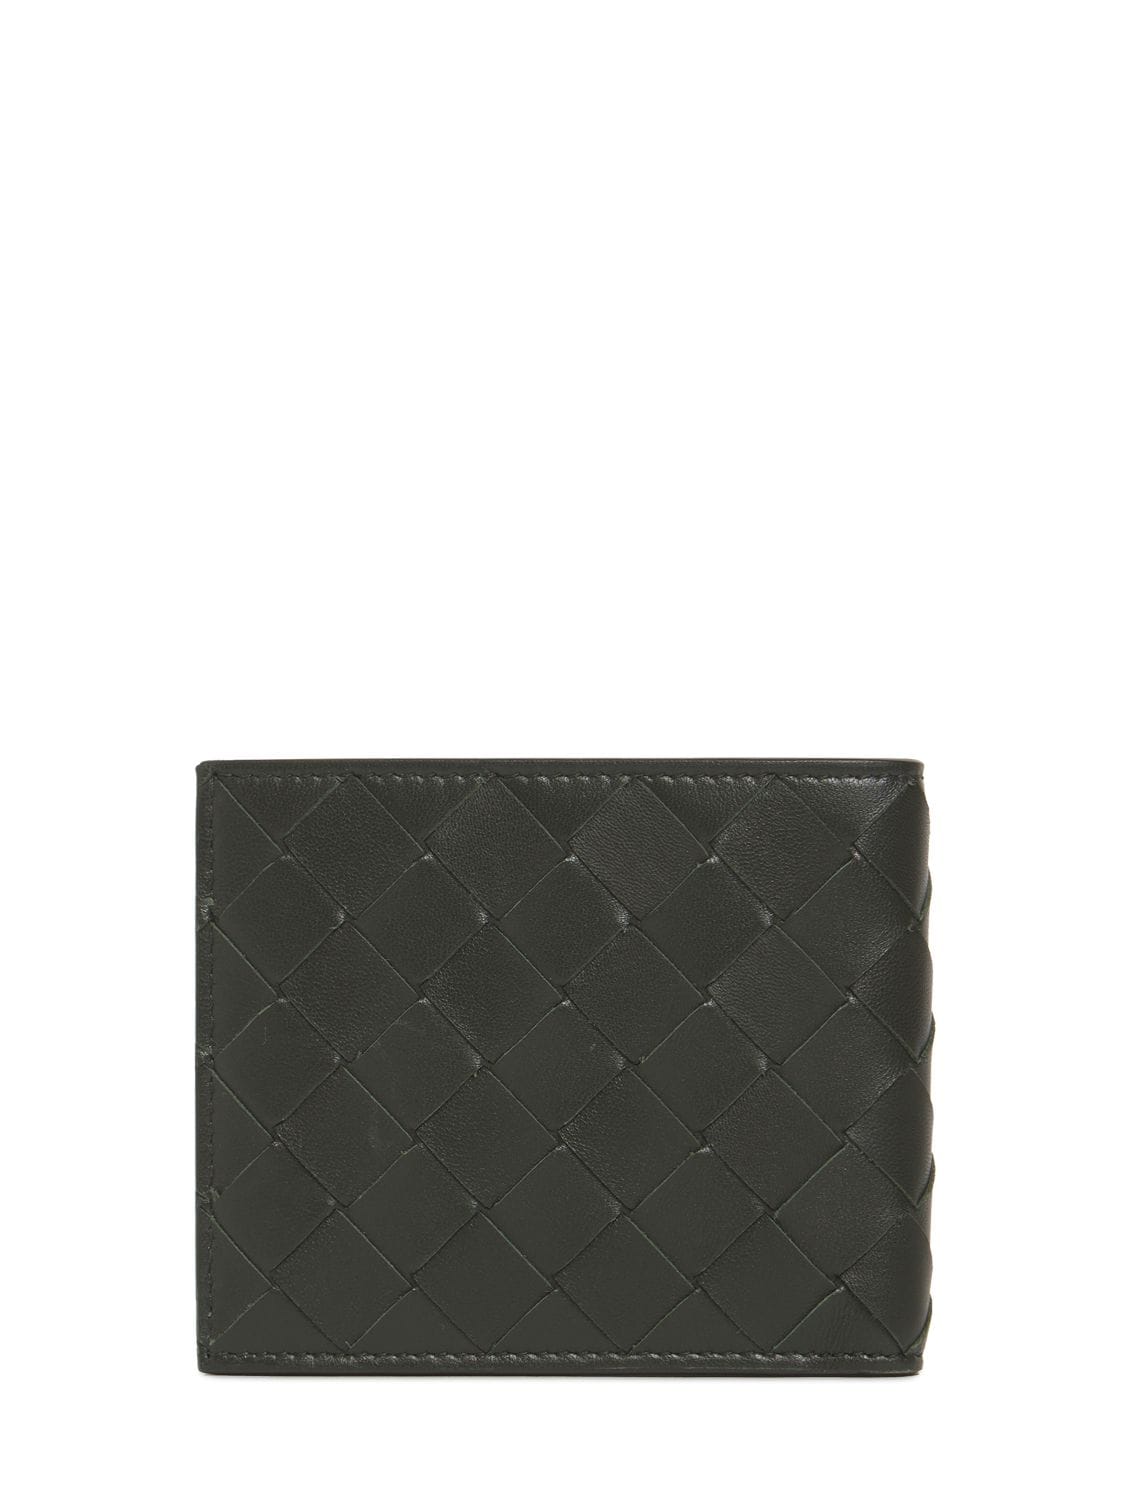 Shop Bottega Veneta Intrecciato Leather Bi-fold Wallet In Dark Green